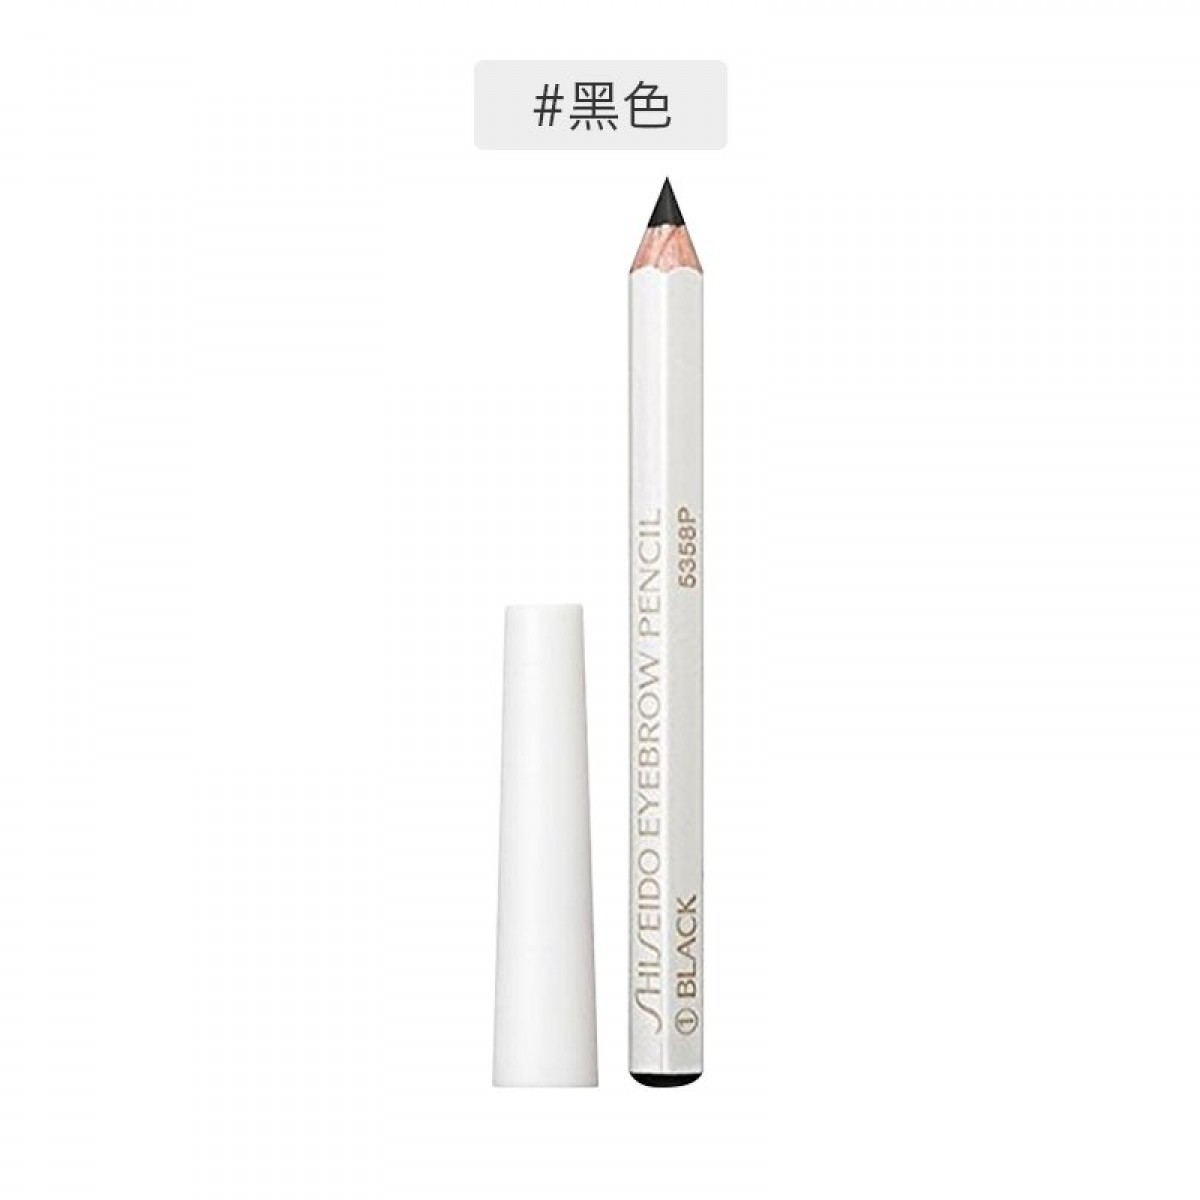 日本Shiseido资生堂 六角眉笔眉墨铅笔#01 黑色1.2g